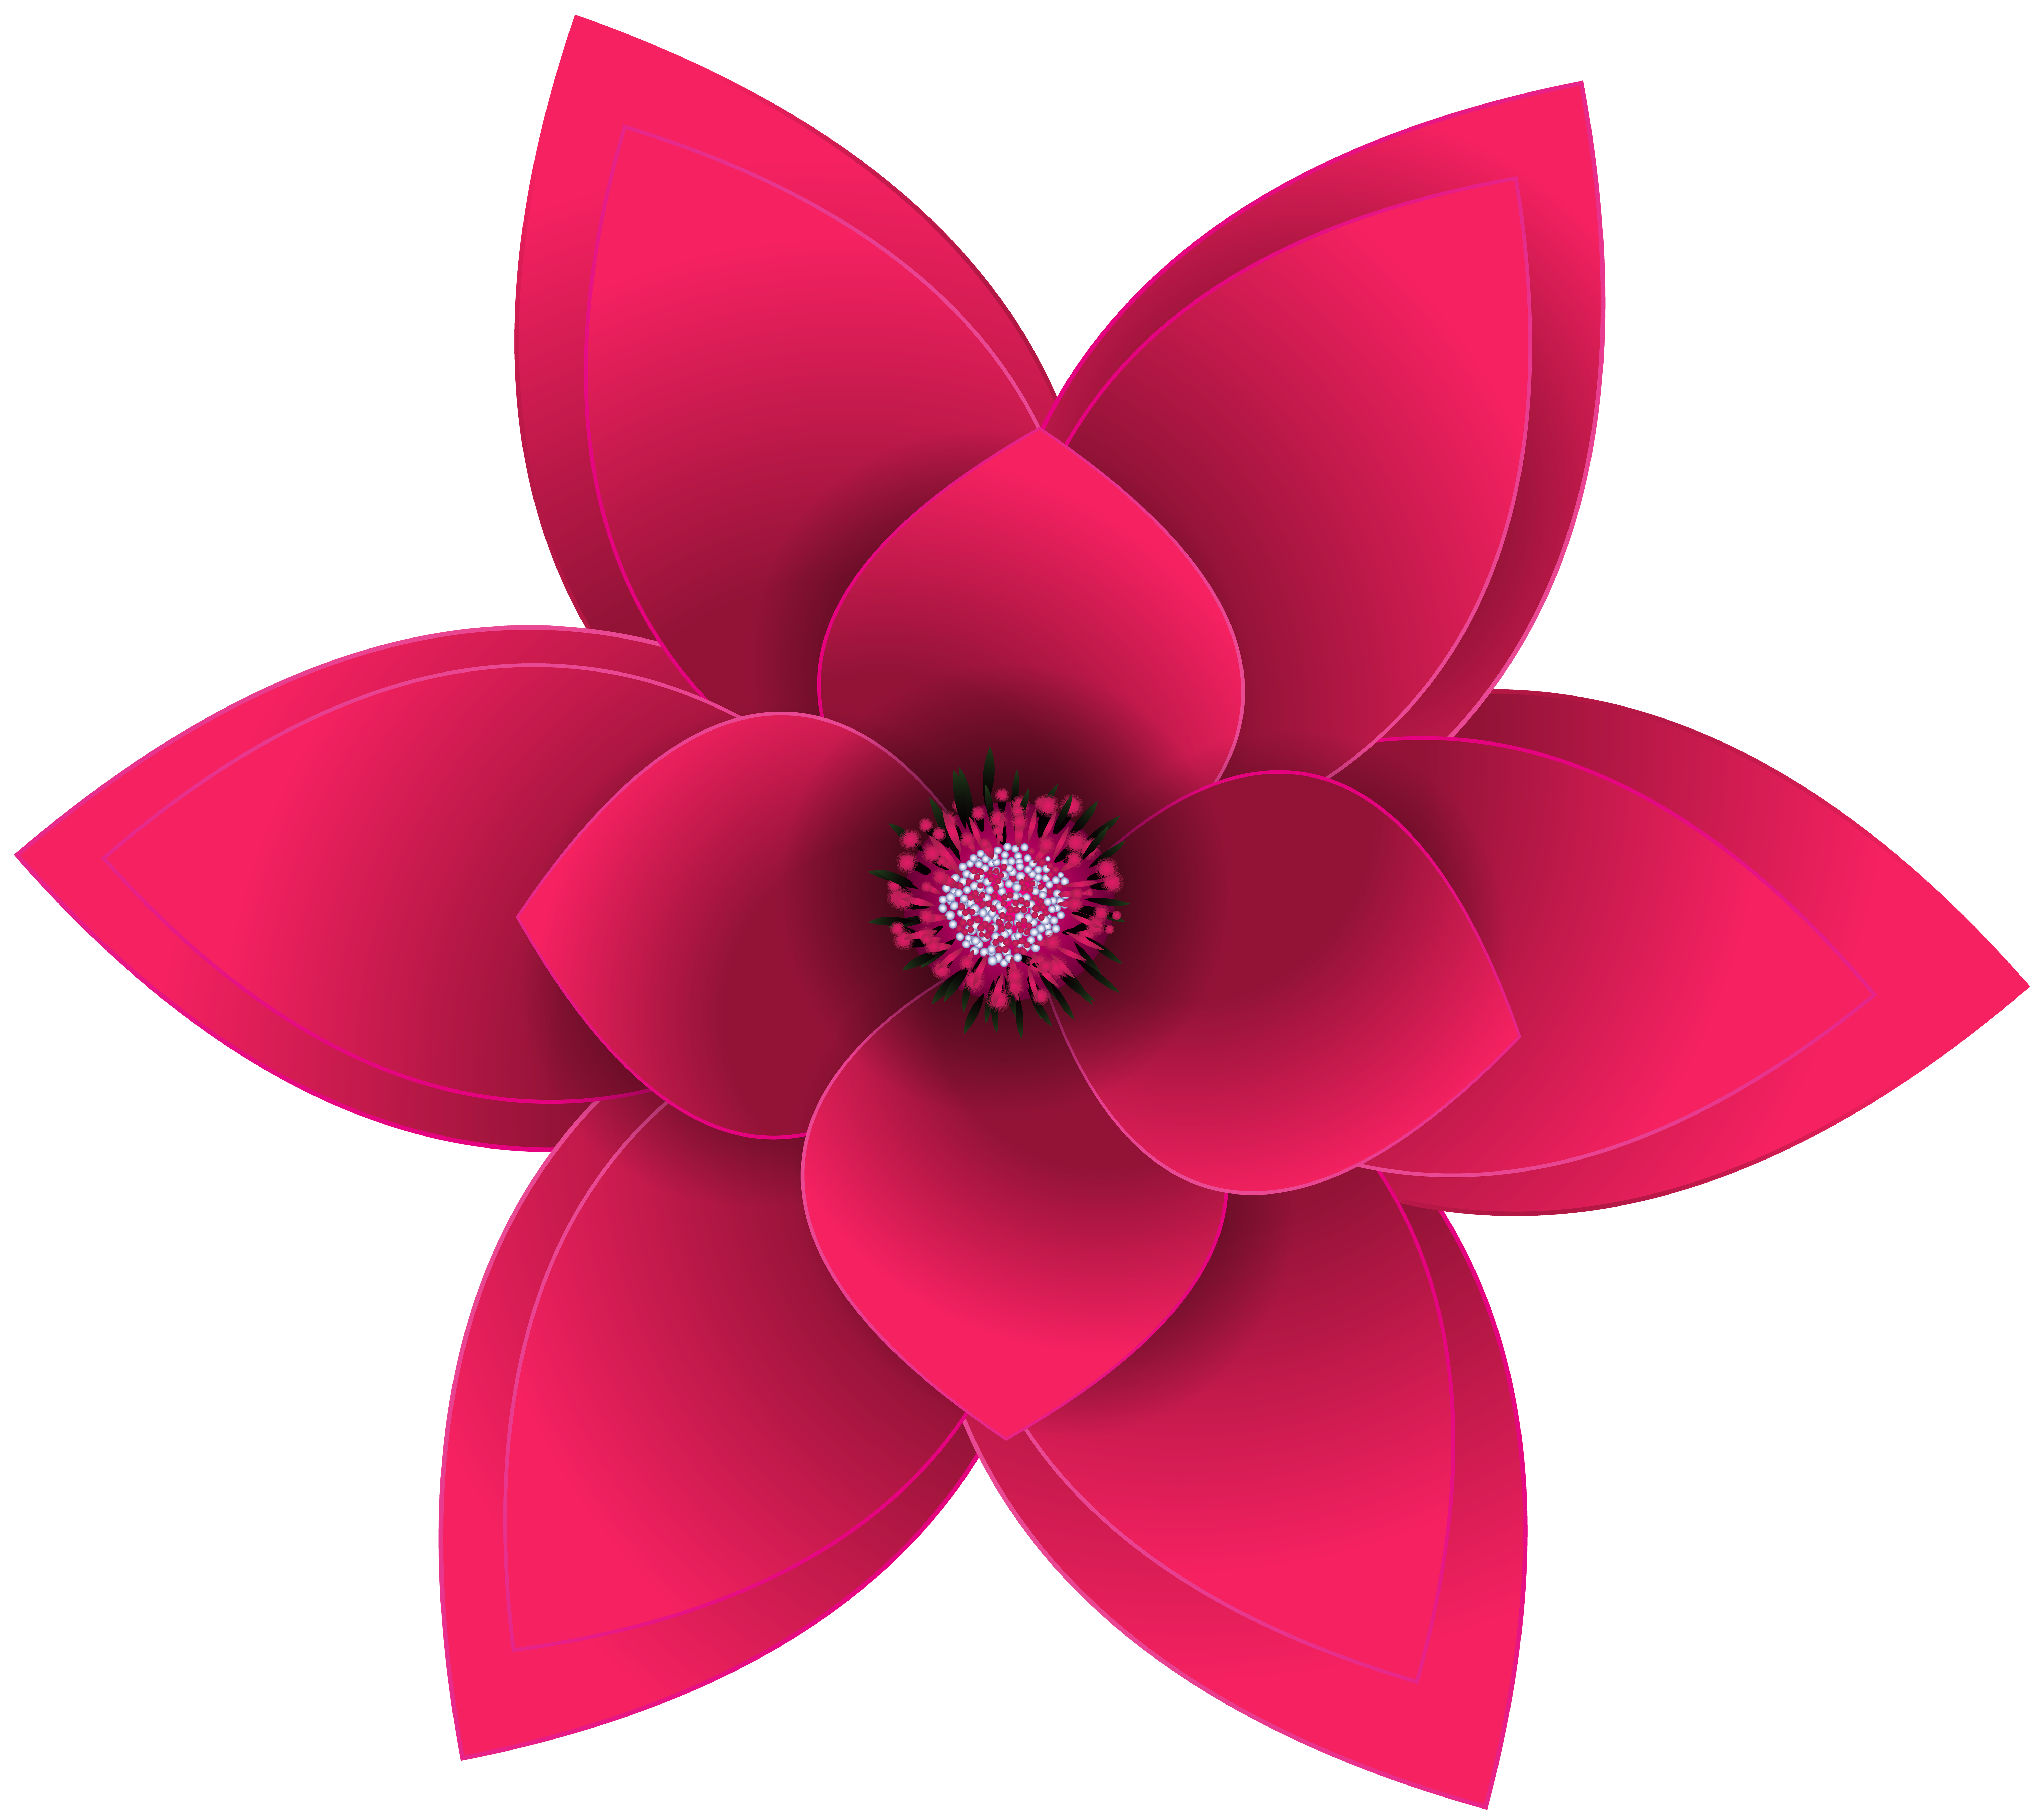 Flower Desktop Wallpaper Clip art - transparent flower png download -  8000*7123 - Free Transparent Flower png Download. - Clip Art Library